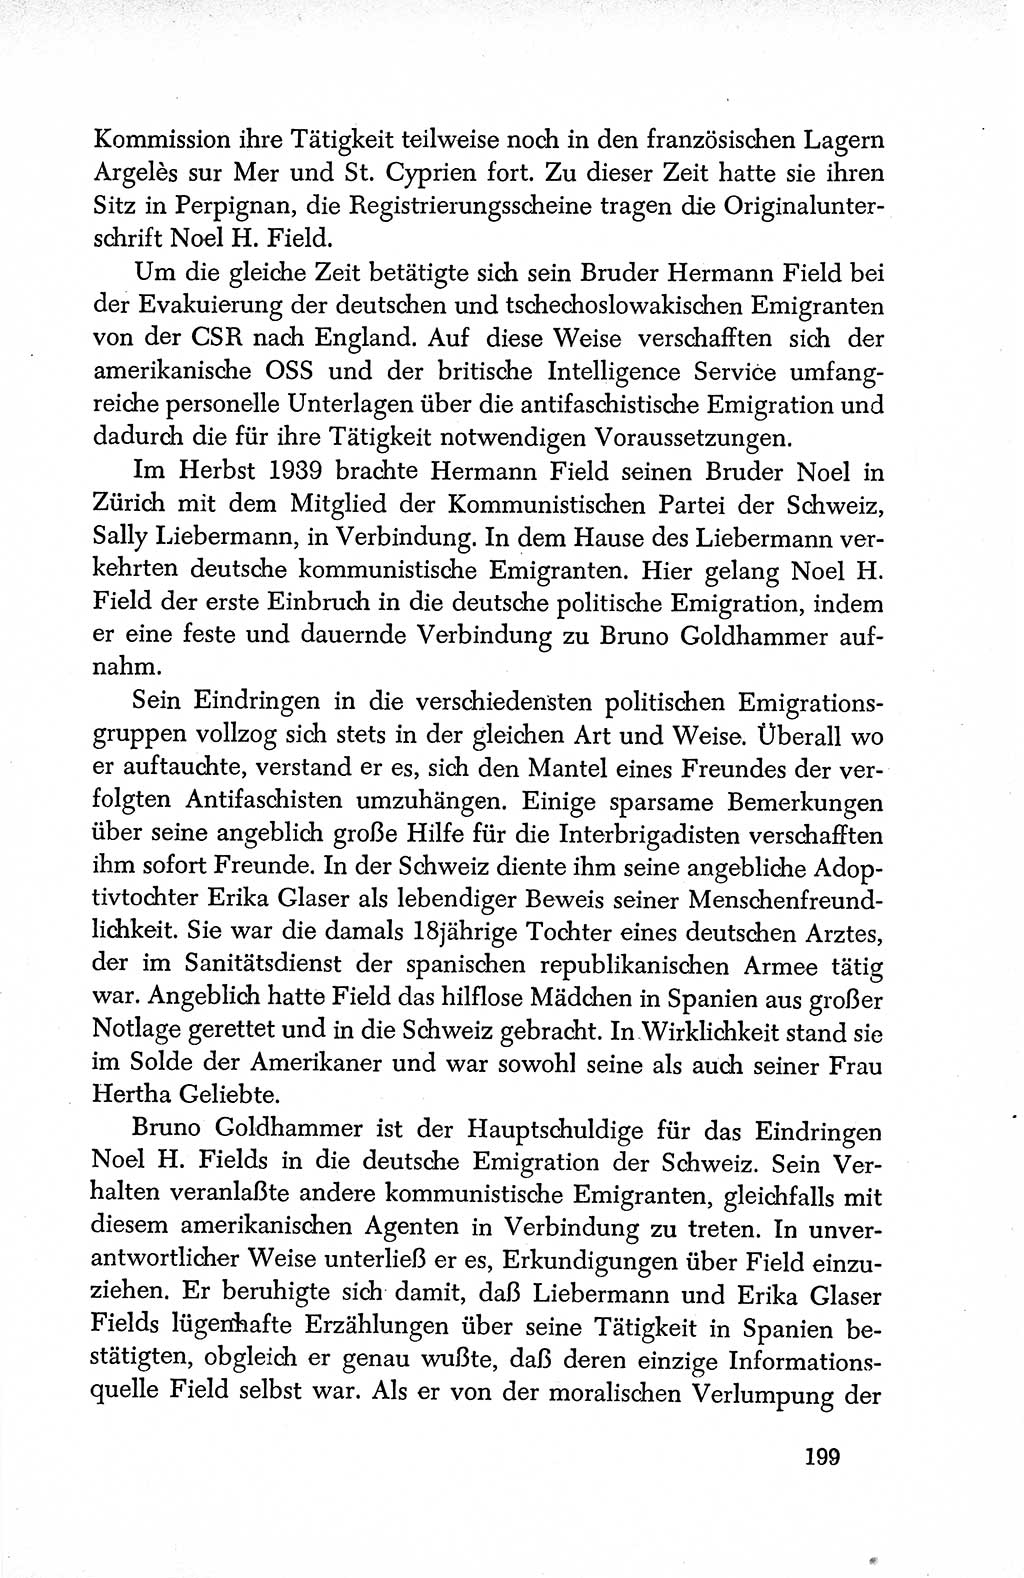 Dokumente der Sozialistischen Einheitspartei Deutschlands (SED) [Deutsche Demokratische Republik (DDR)] 1950-1952, Seite 199 (Dok. SED DDR 1950-1952, S. 199)